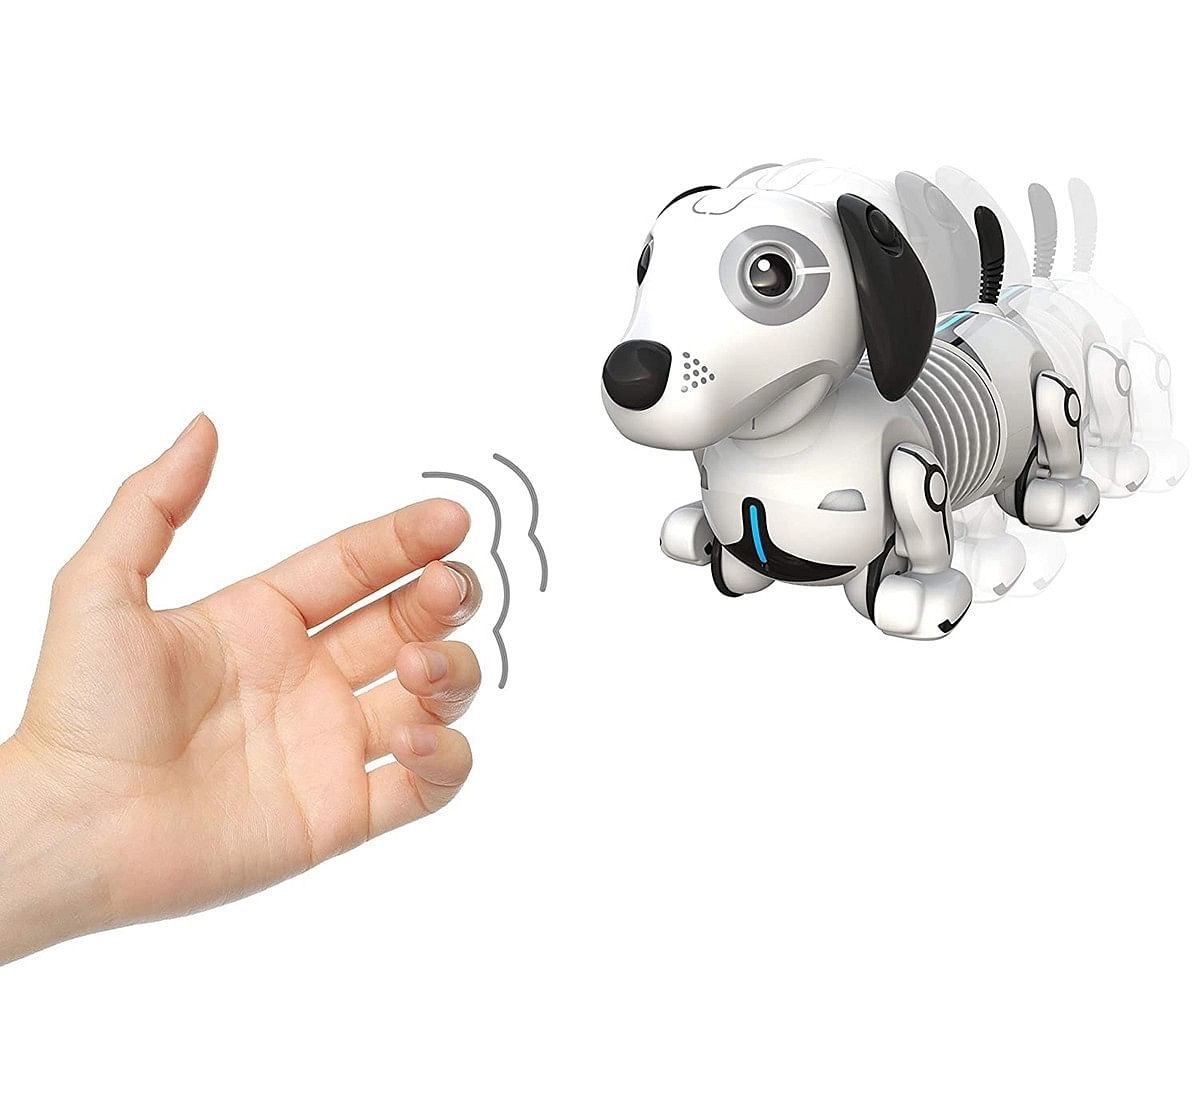 Silverlit Zigito A Robotic Puppy Robotics for Kids age 5Y+ 